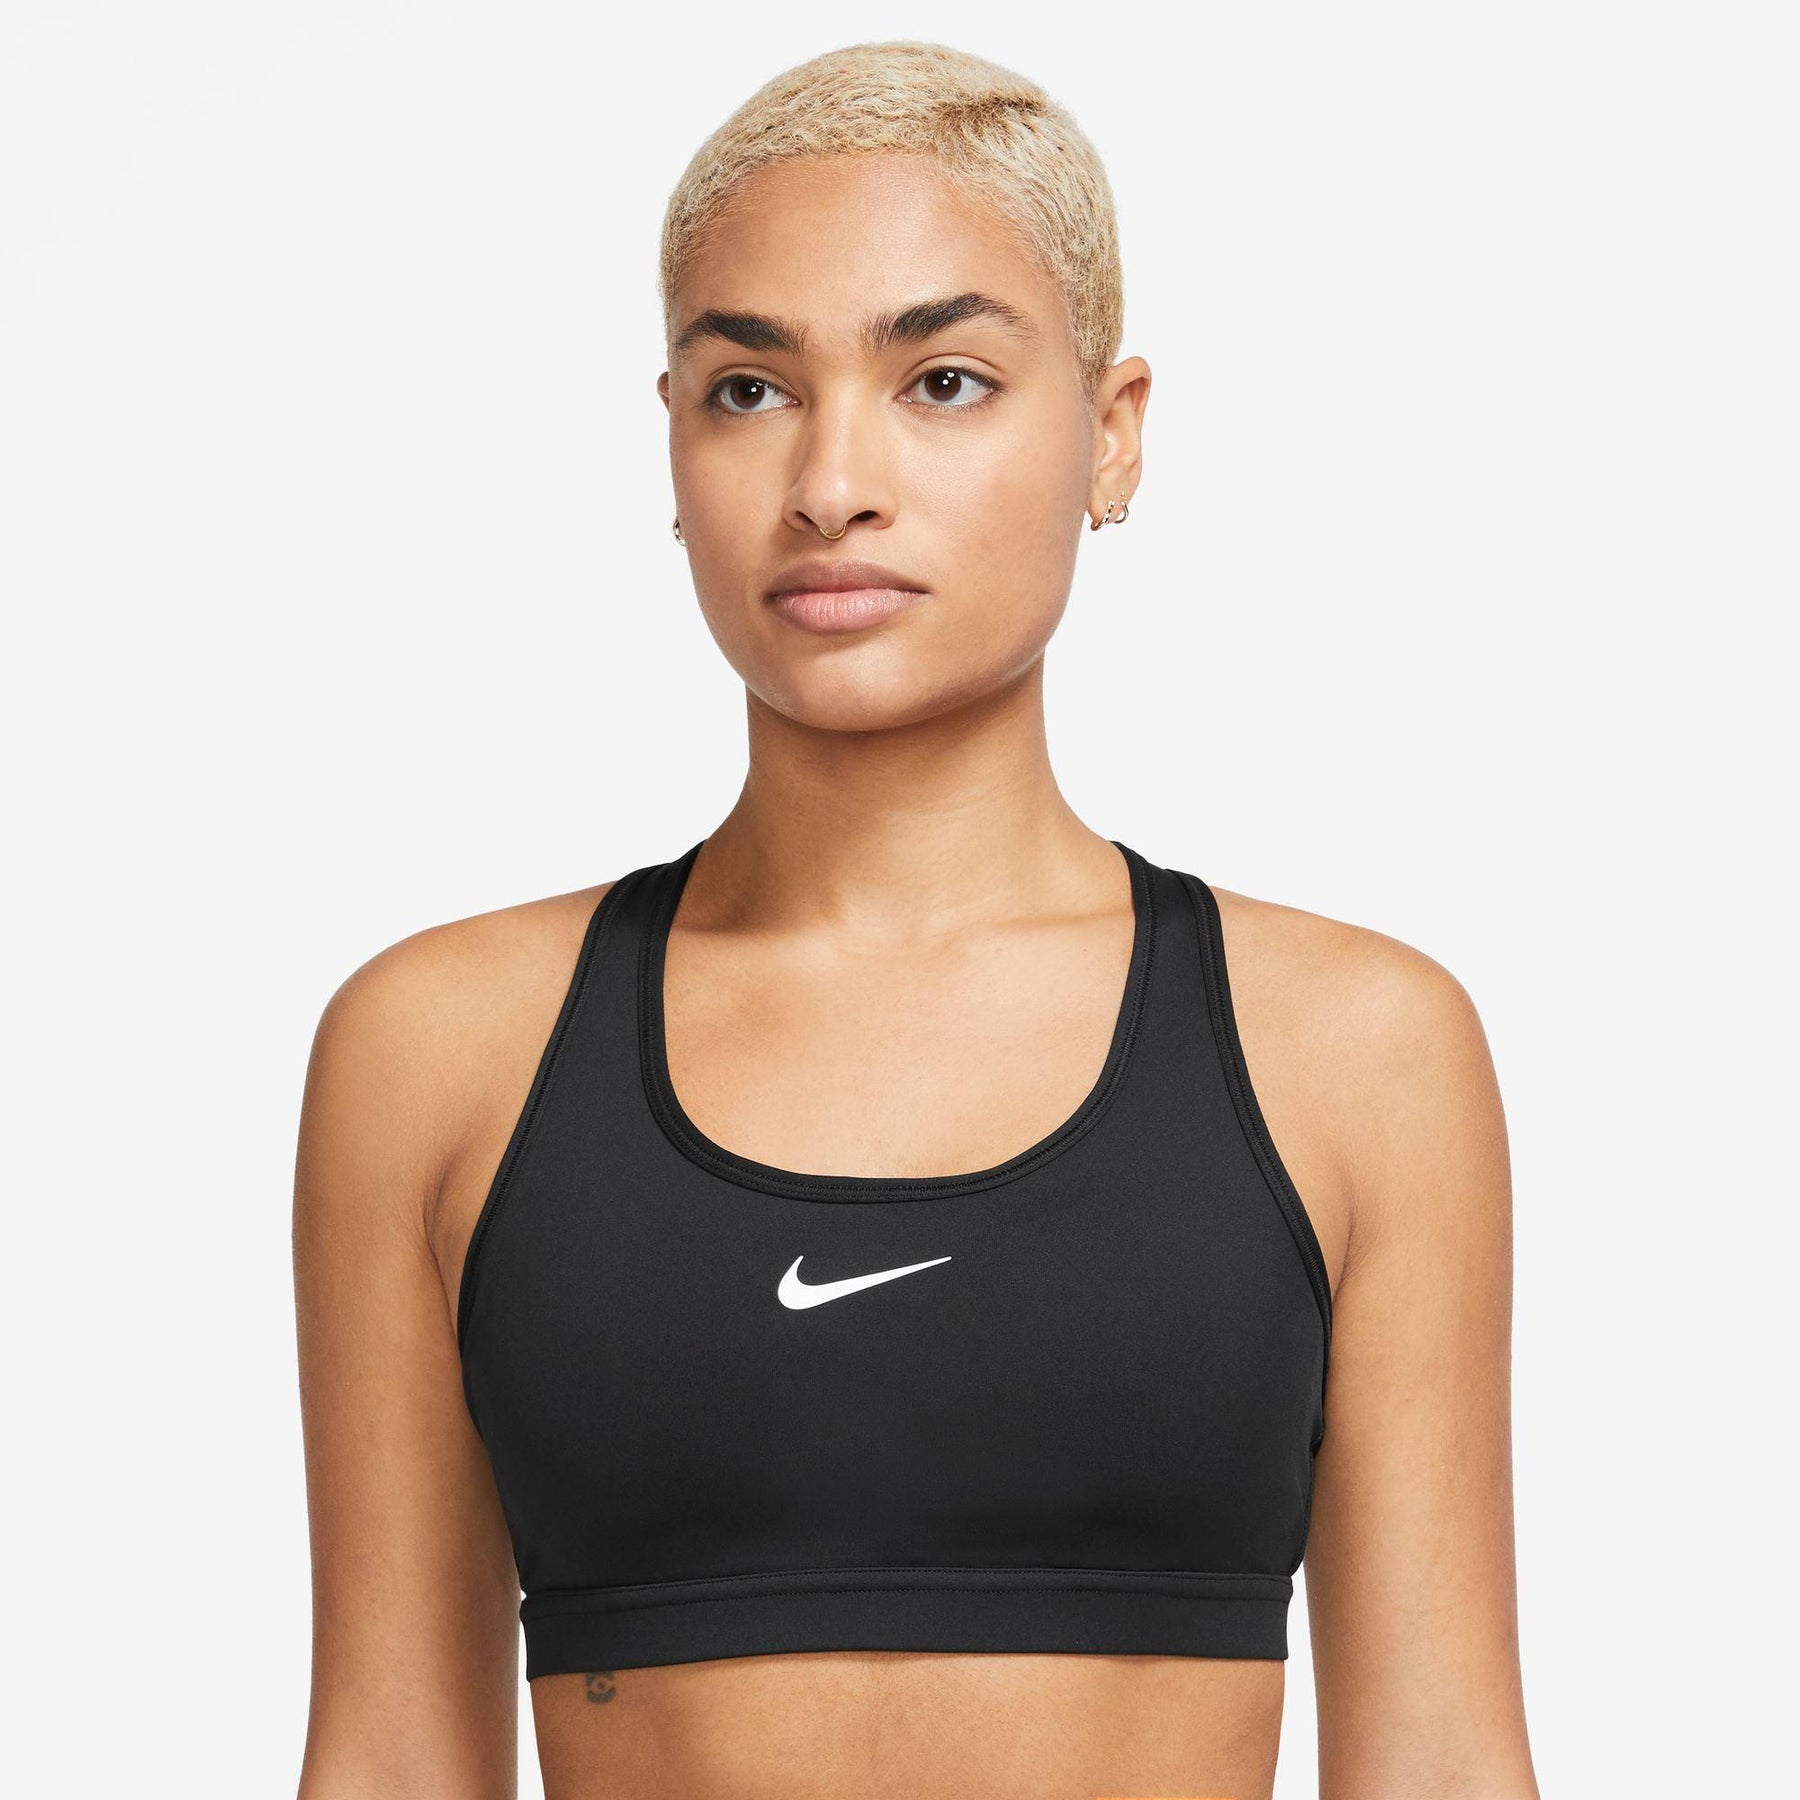 Buy Nike Swoosh Plus Size Sports Bras Women Mint, White online